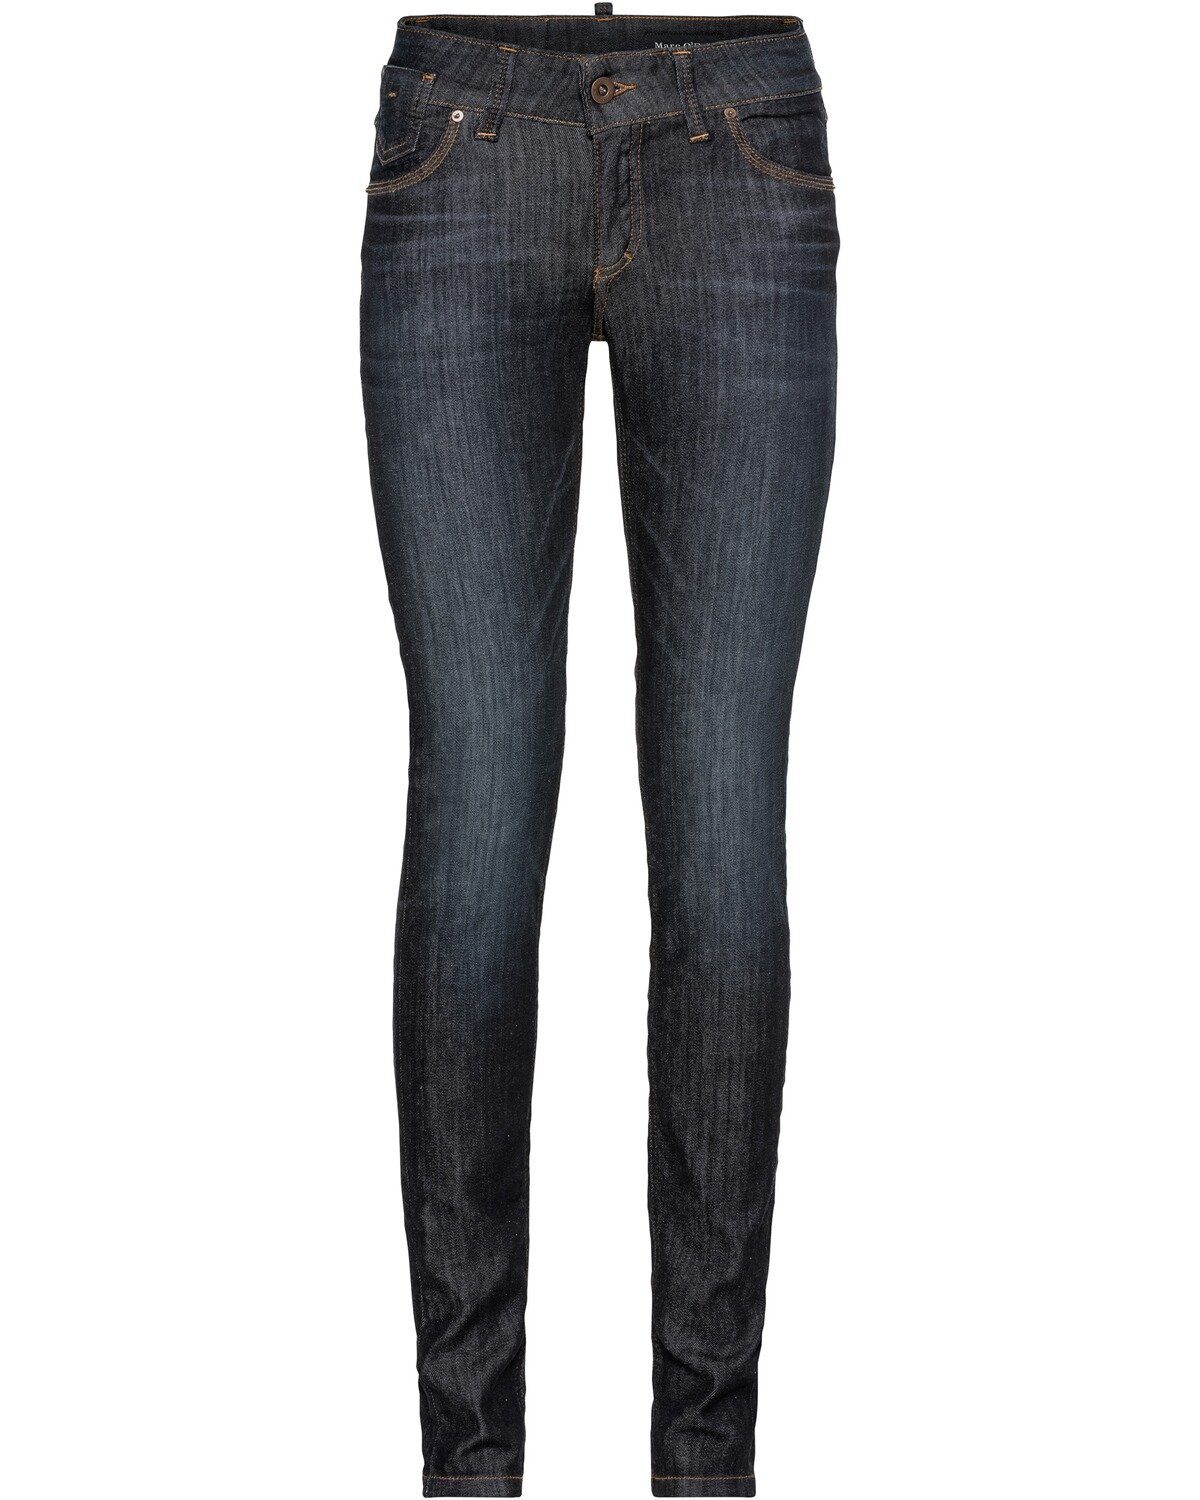 Marc O'Polo 5-Pocket-Jeans »Jeans Skara Slim« | OTTO